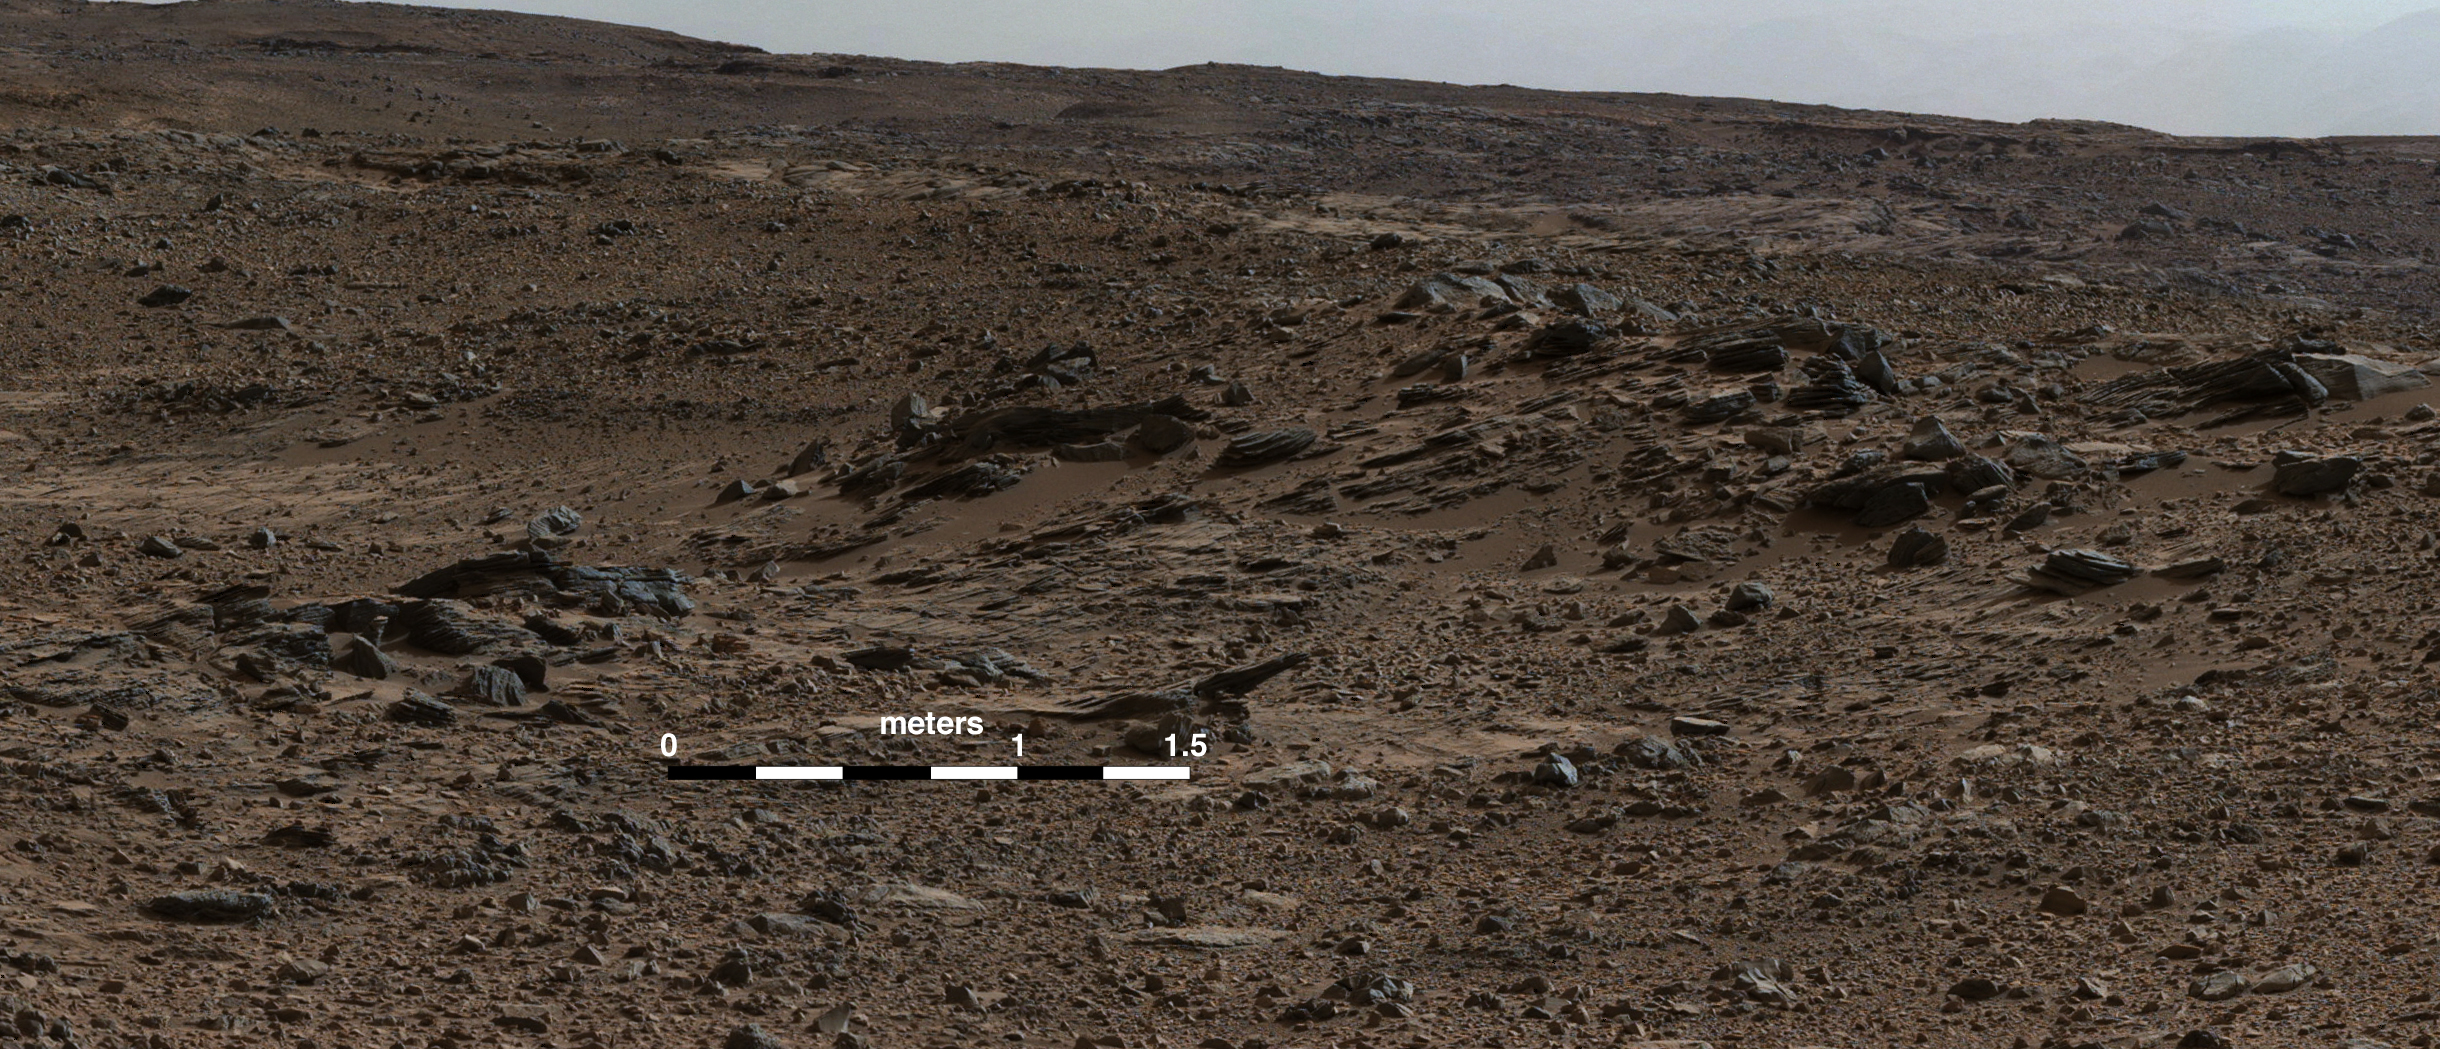 火星ゲイルクレーターにある荒野。地球の乾燥した砂漠と地下の土壌構成が近いかもしれない。